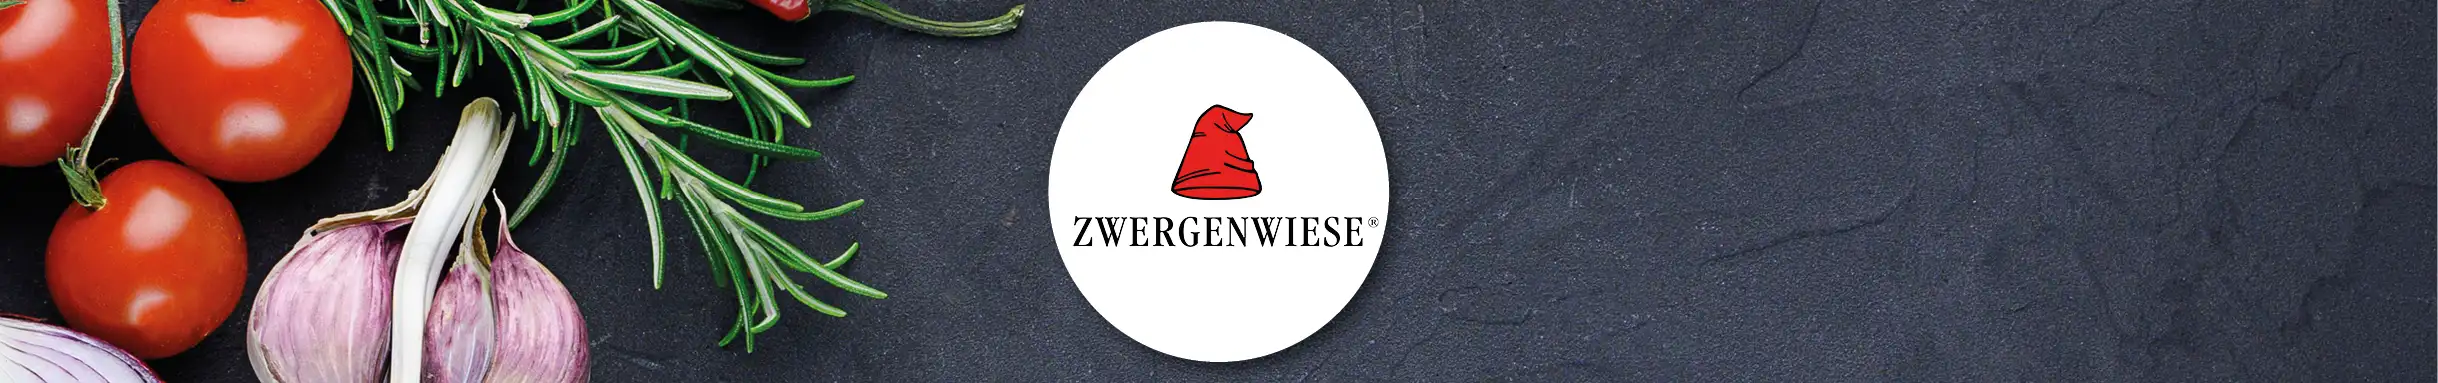 Markenbanner Zwergenwiese